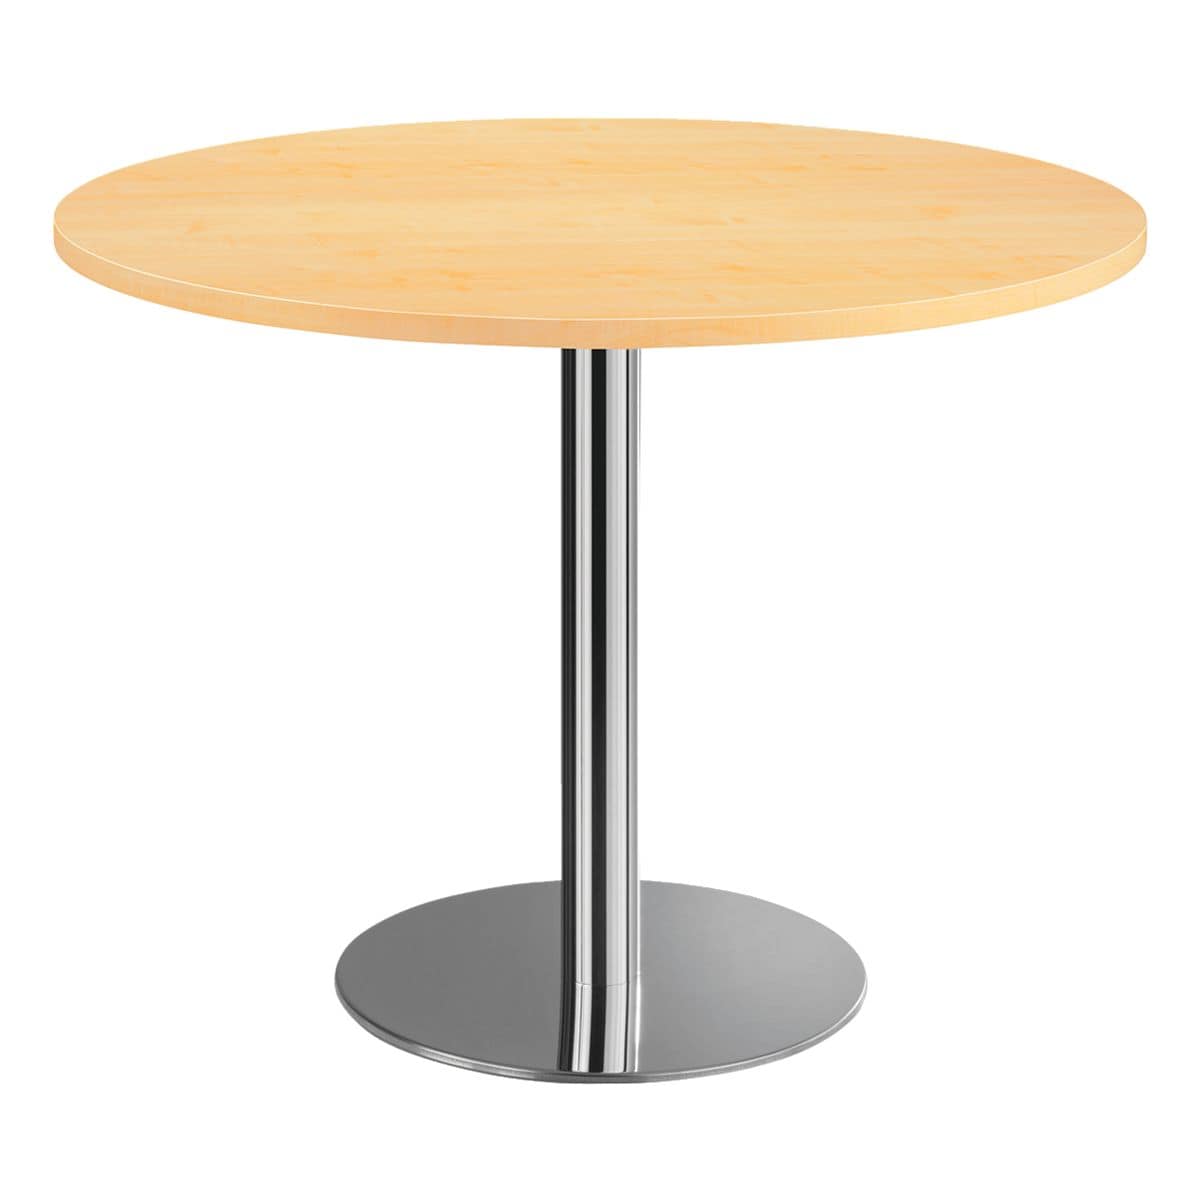 Стол высотой 90 см. Стол column d80 White. Стол Tulip d80 белый. Aro стол Берлин круглый сталь стекло, 60 x 60 x 70см. Стол барный Signal b100 d60 см.